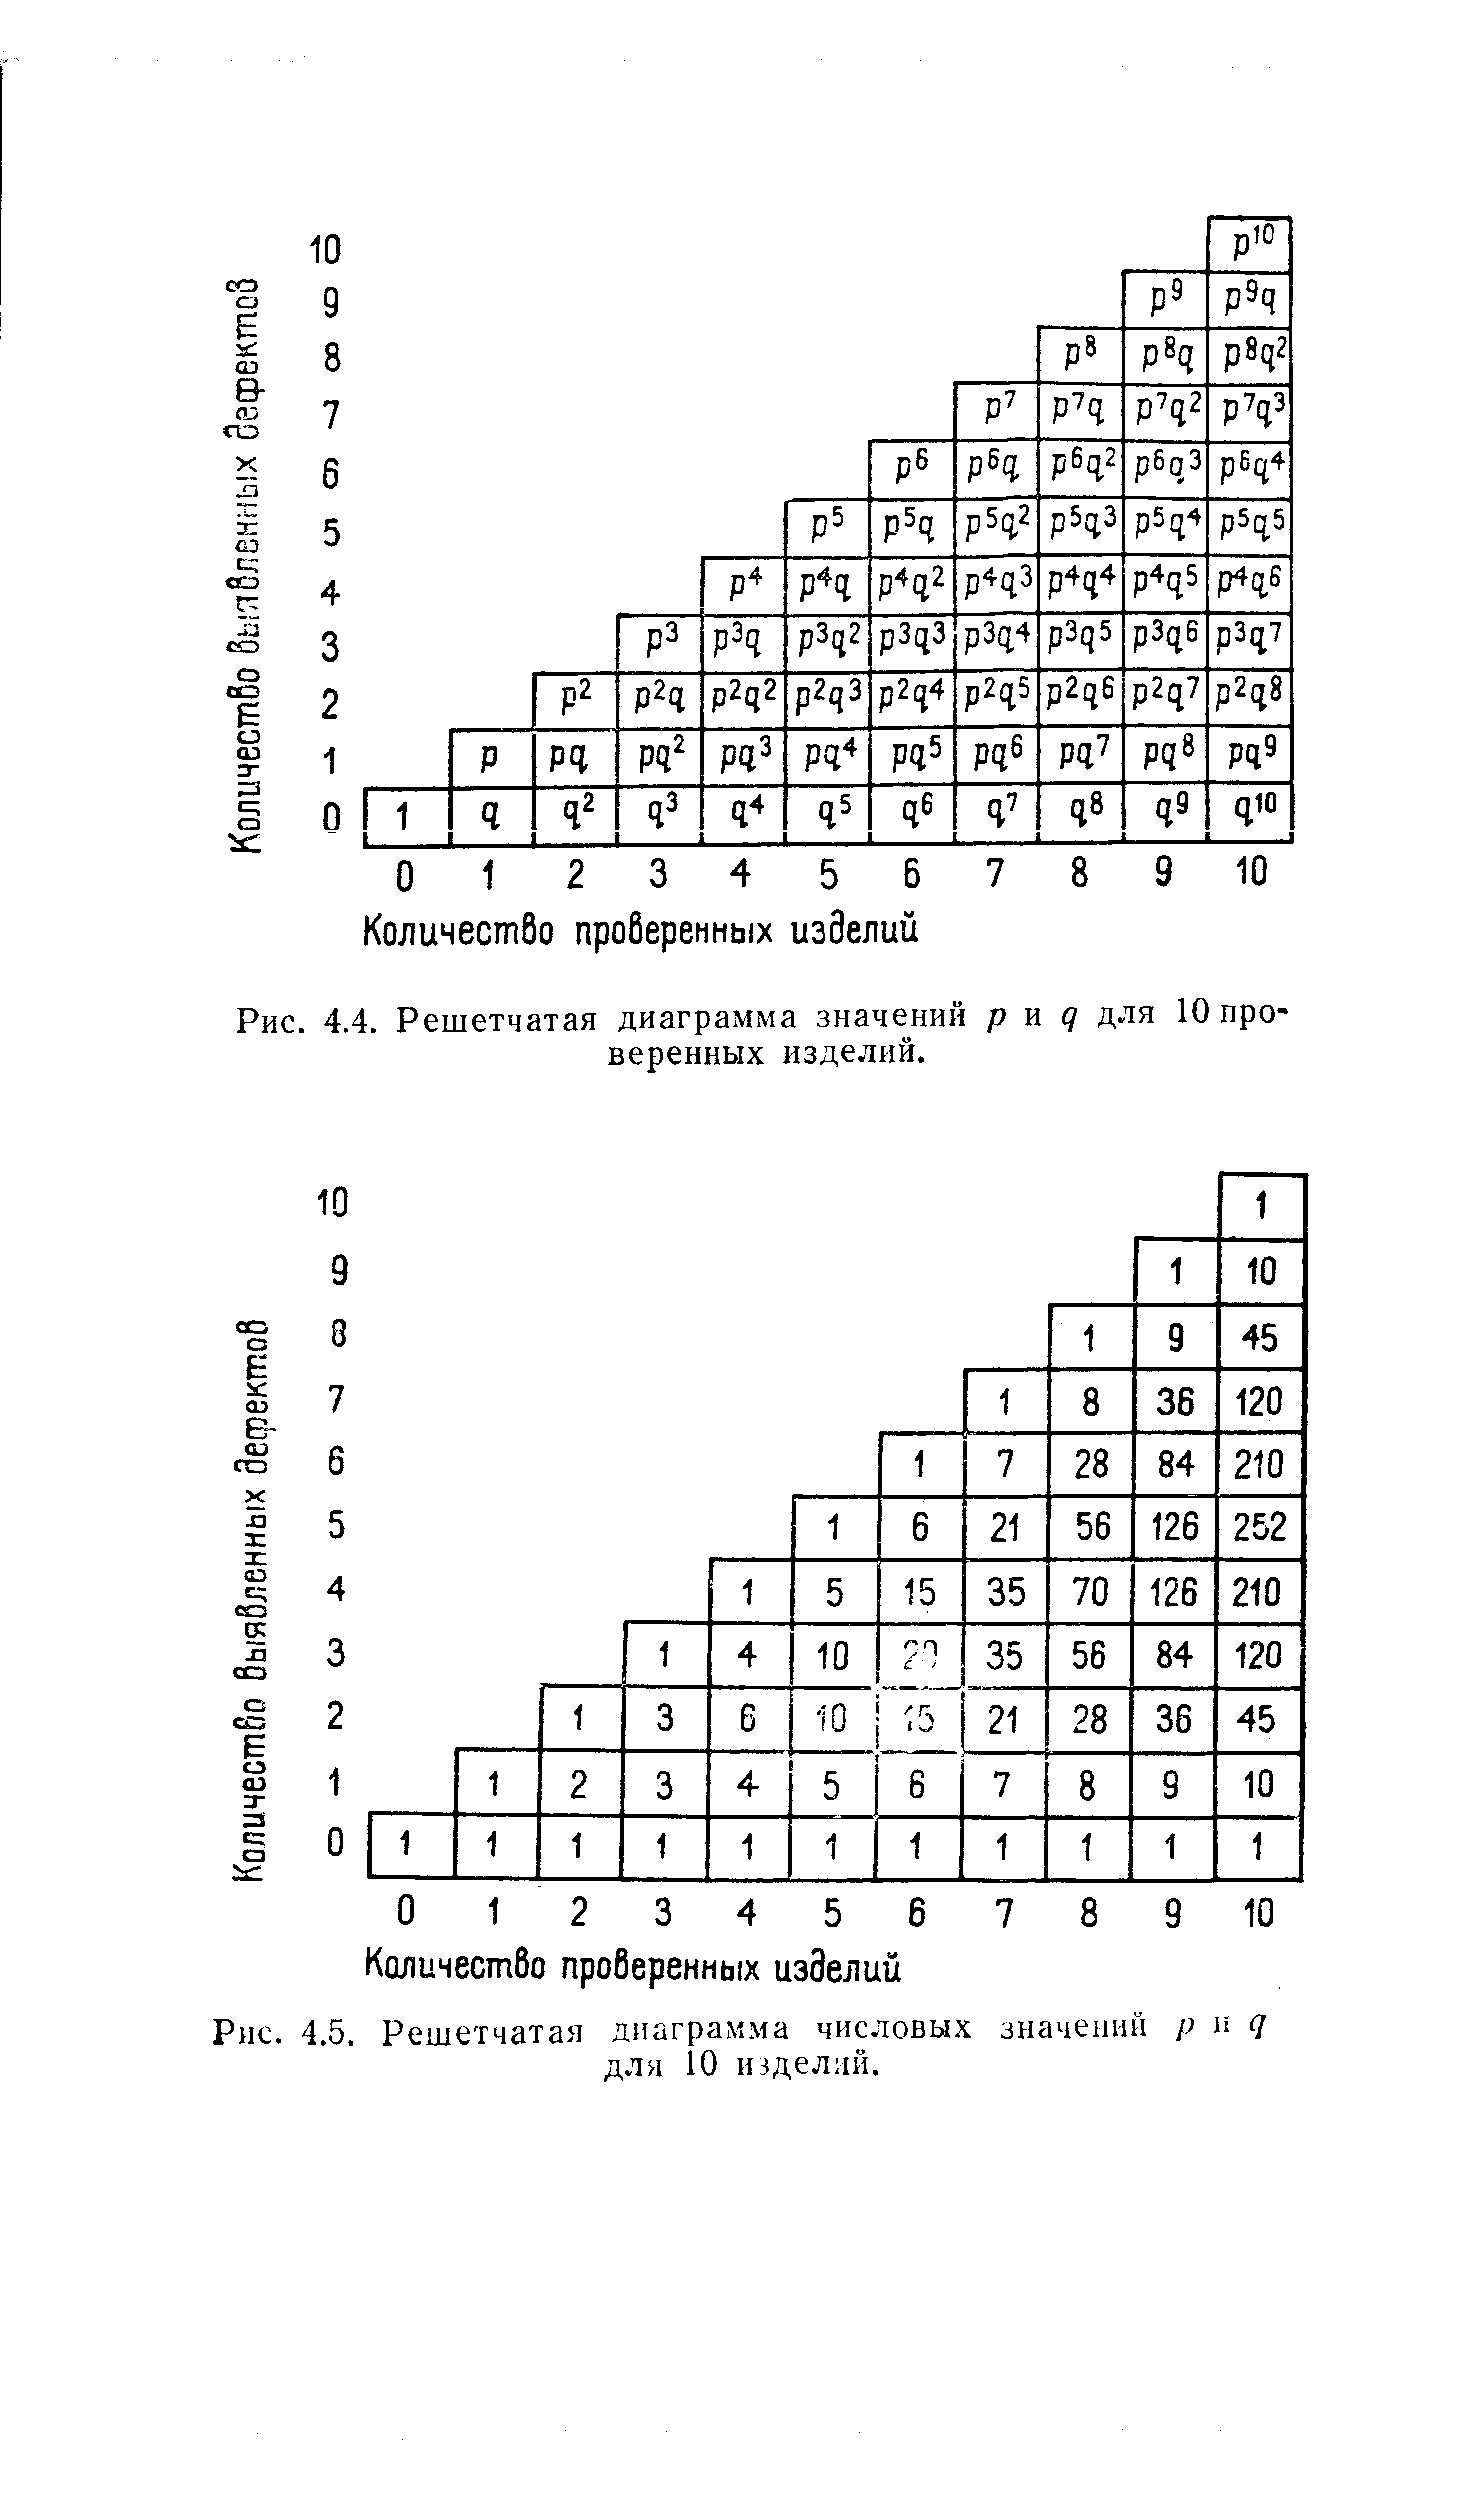 Рис. 4.5. Решетчатая диаграмма числовых значений р и q для 10 изделий.
